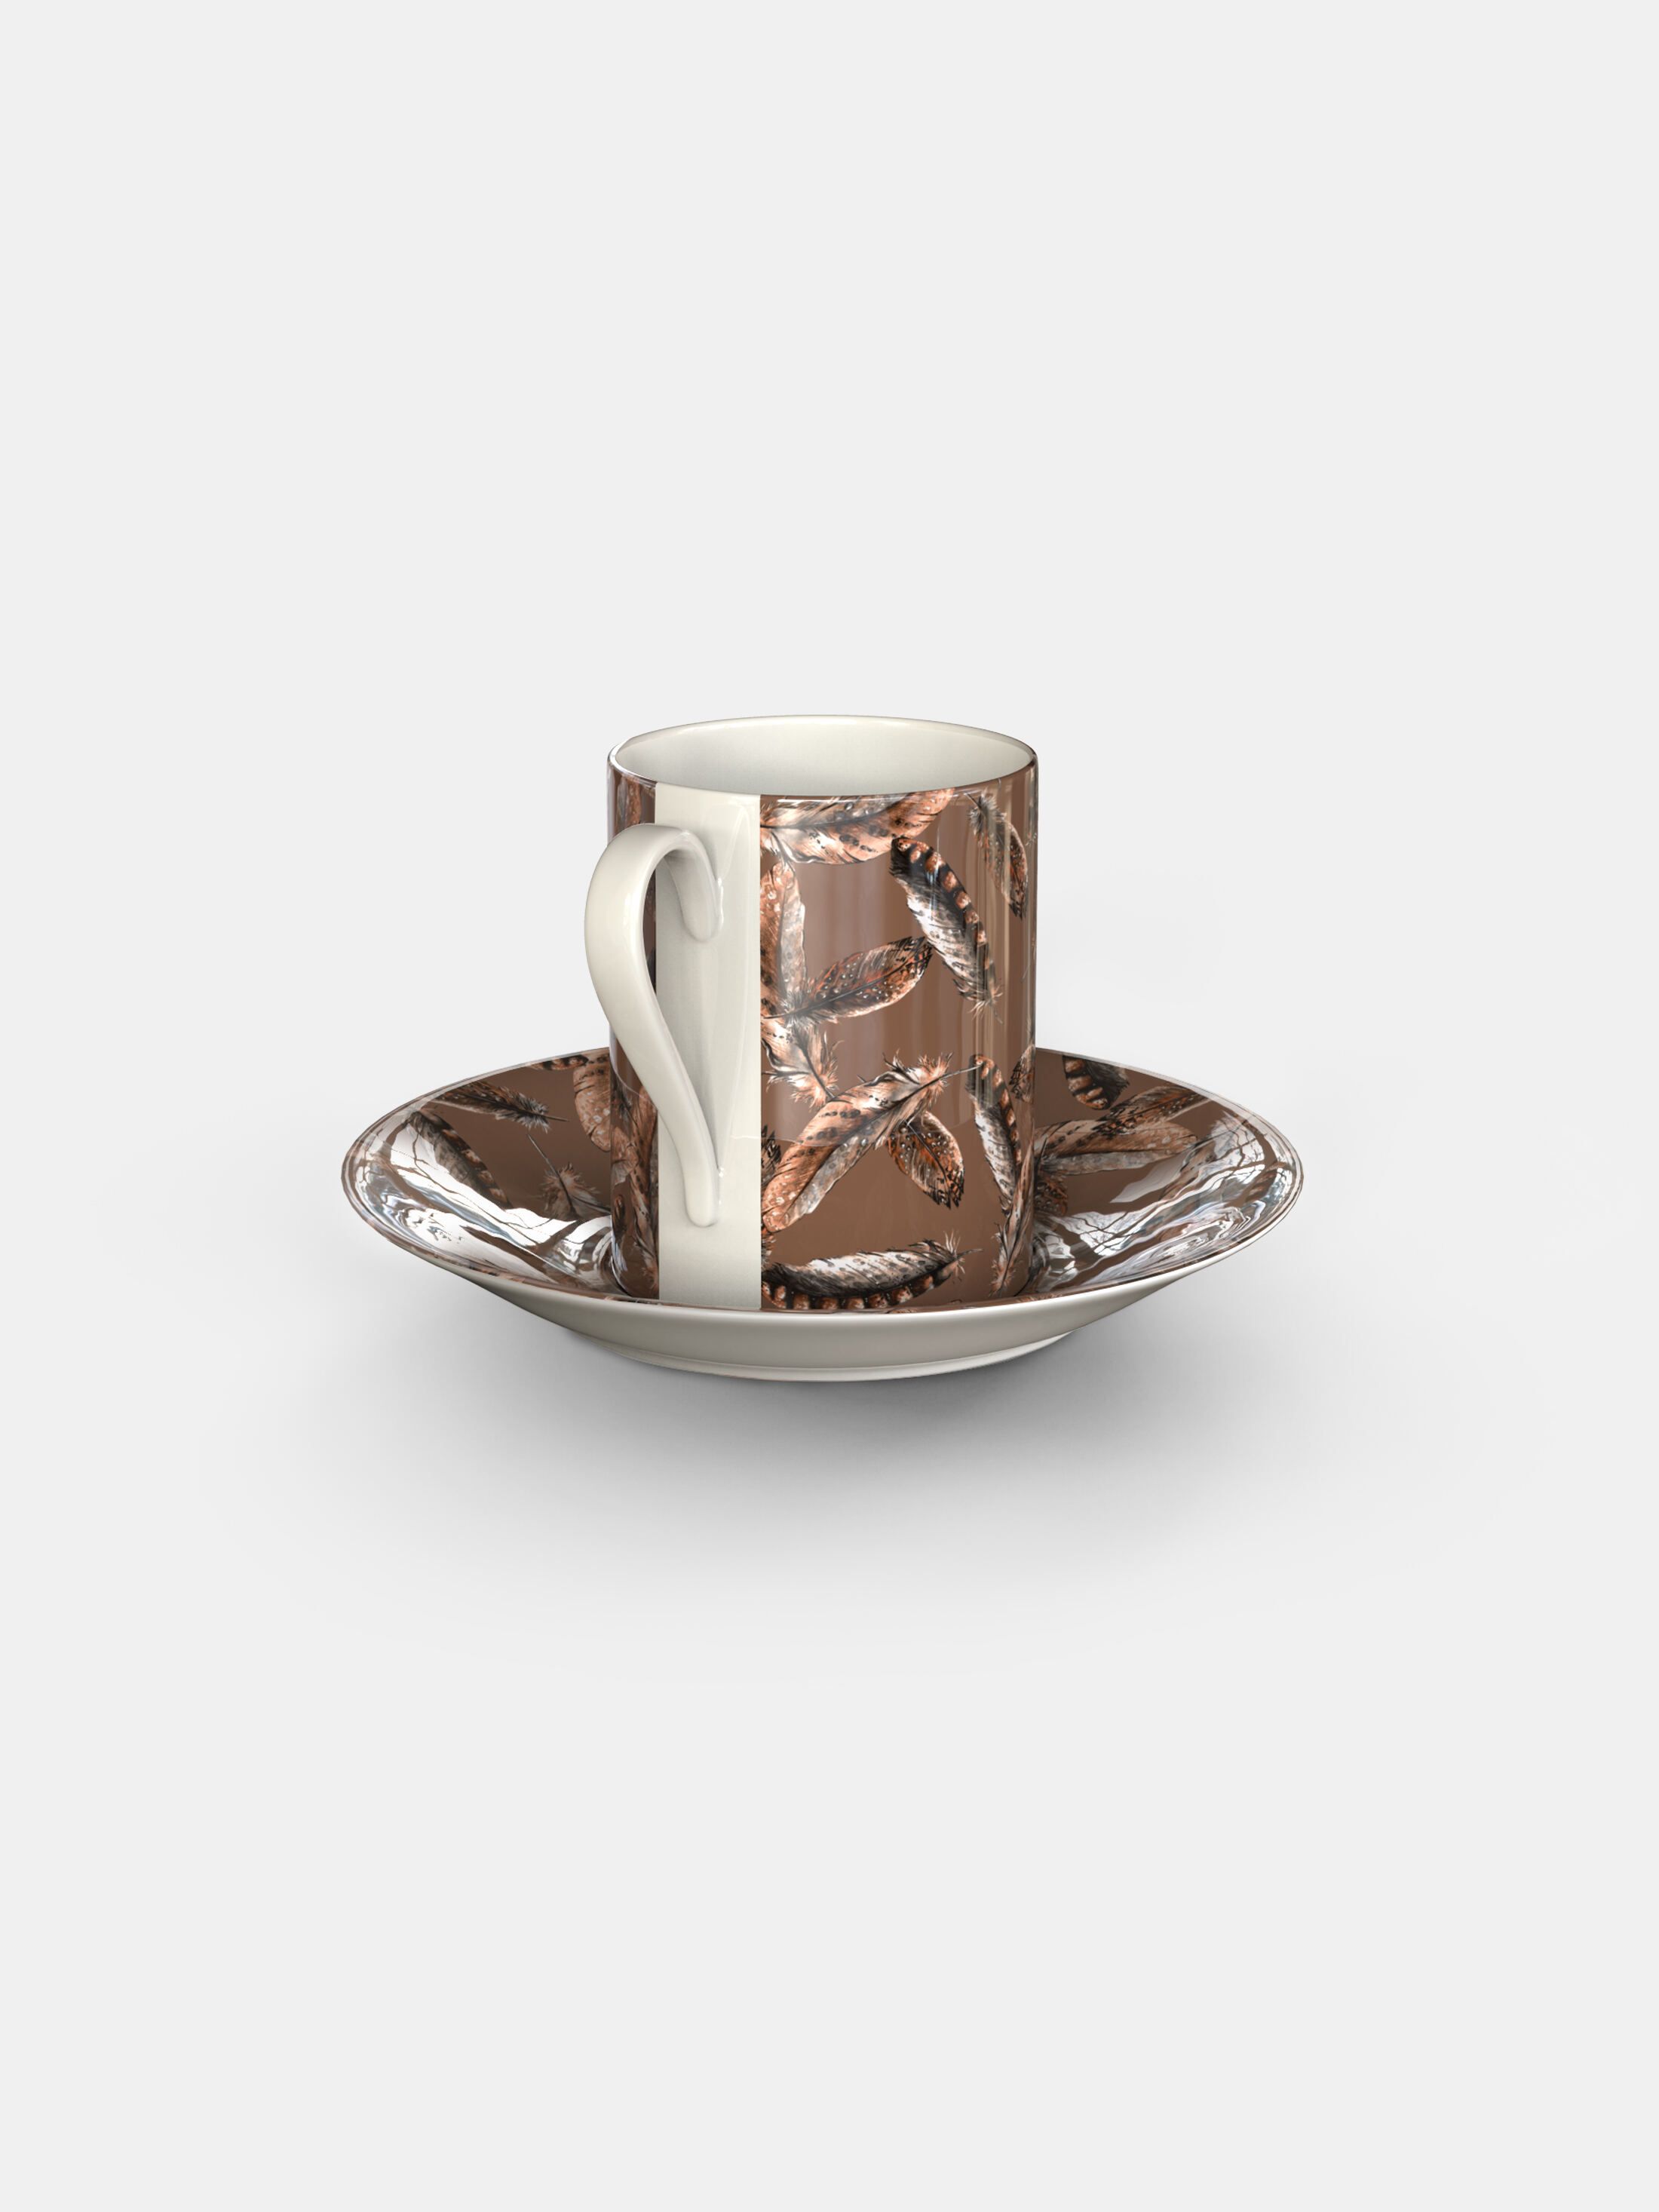 Custom Espresso Travel Cup, Espresso